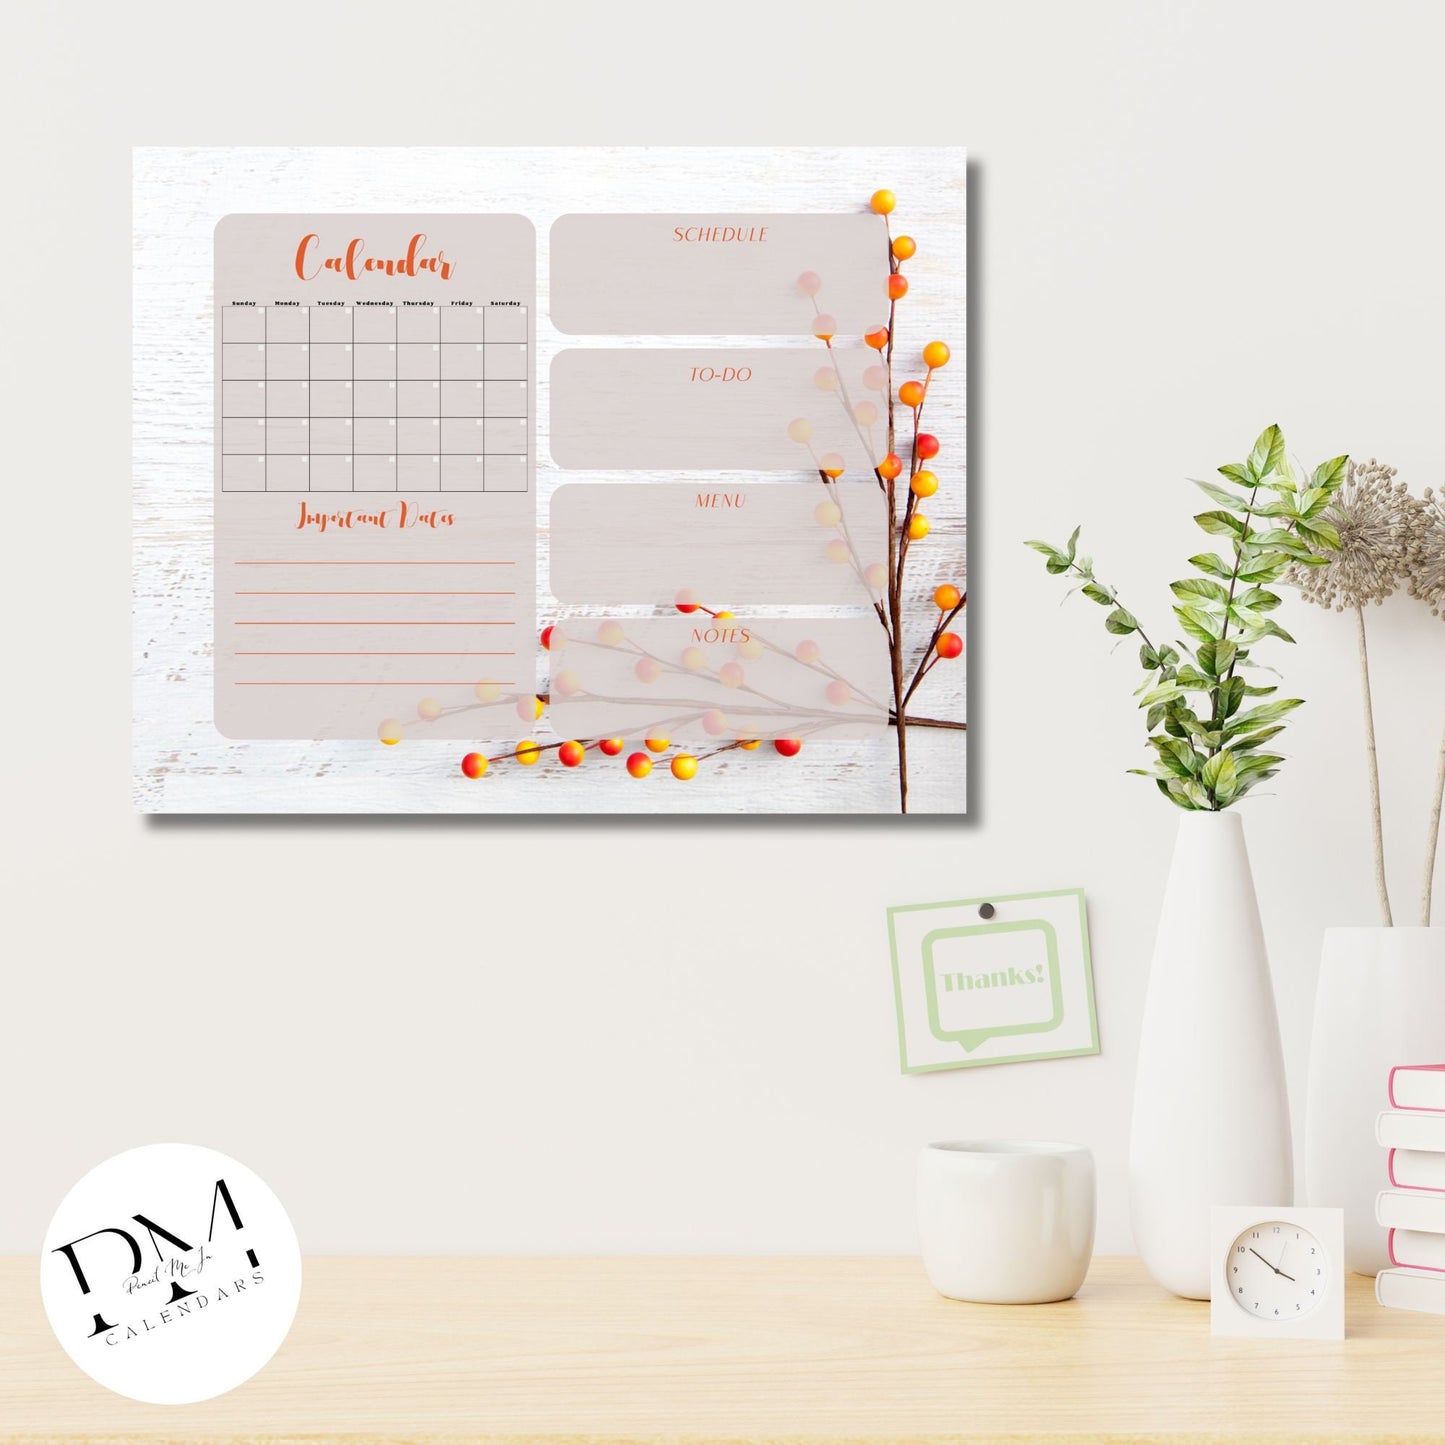 Acrylic Wall Calendar, Acrylic Floral Calendar, Autumn Theme Calendar, Everyday Calendar, Daily To-Dos, Scheduler for Mom, Organization Tool